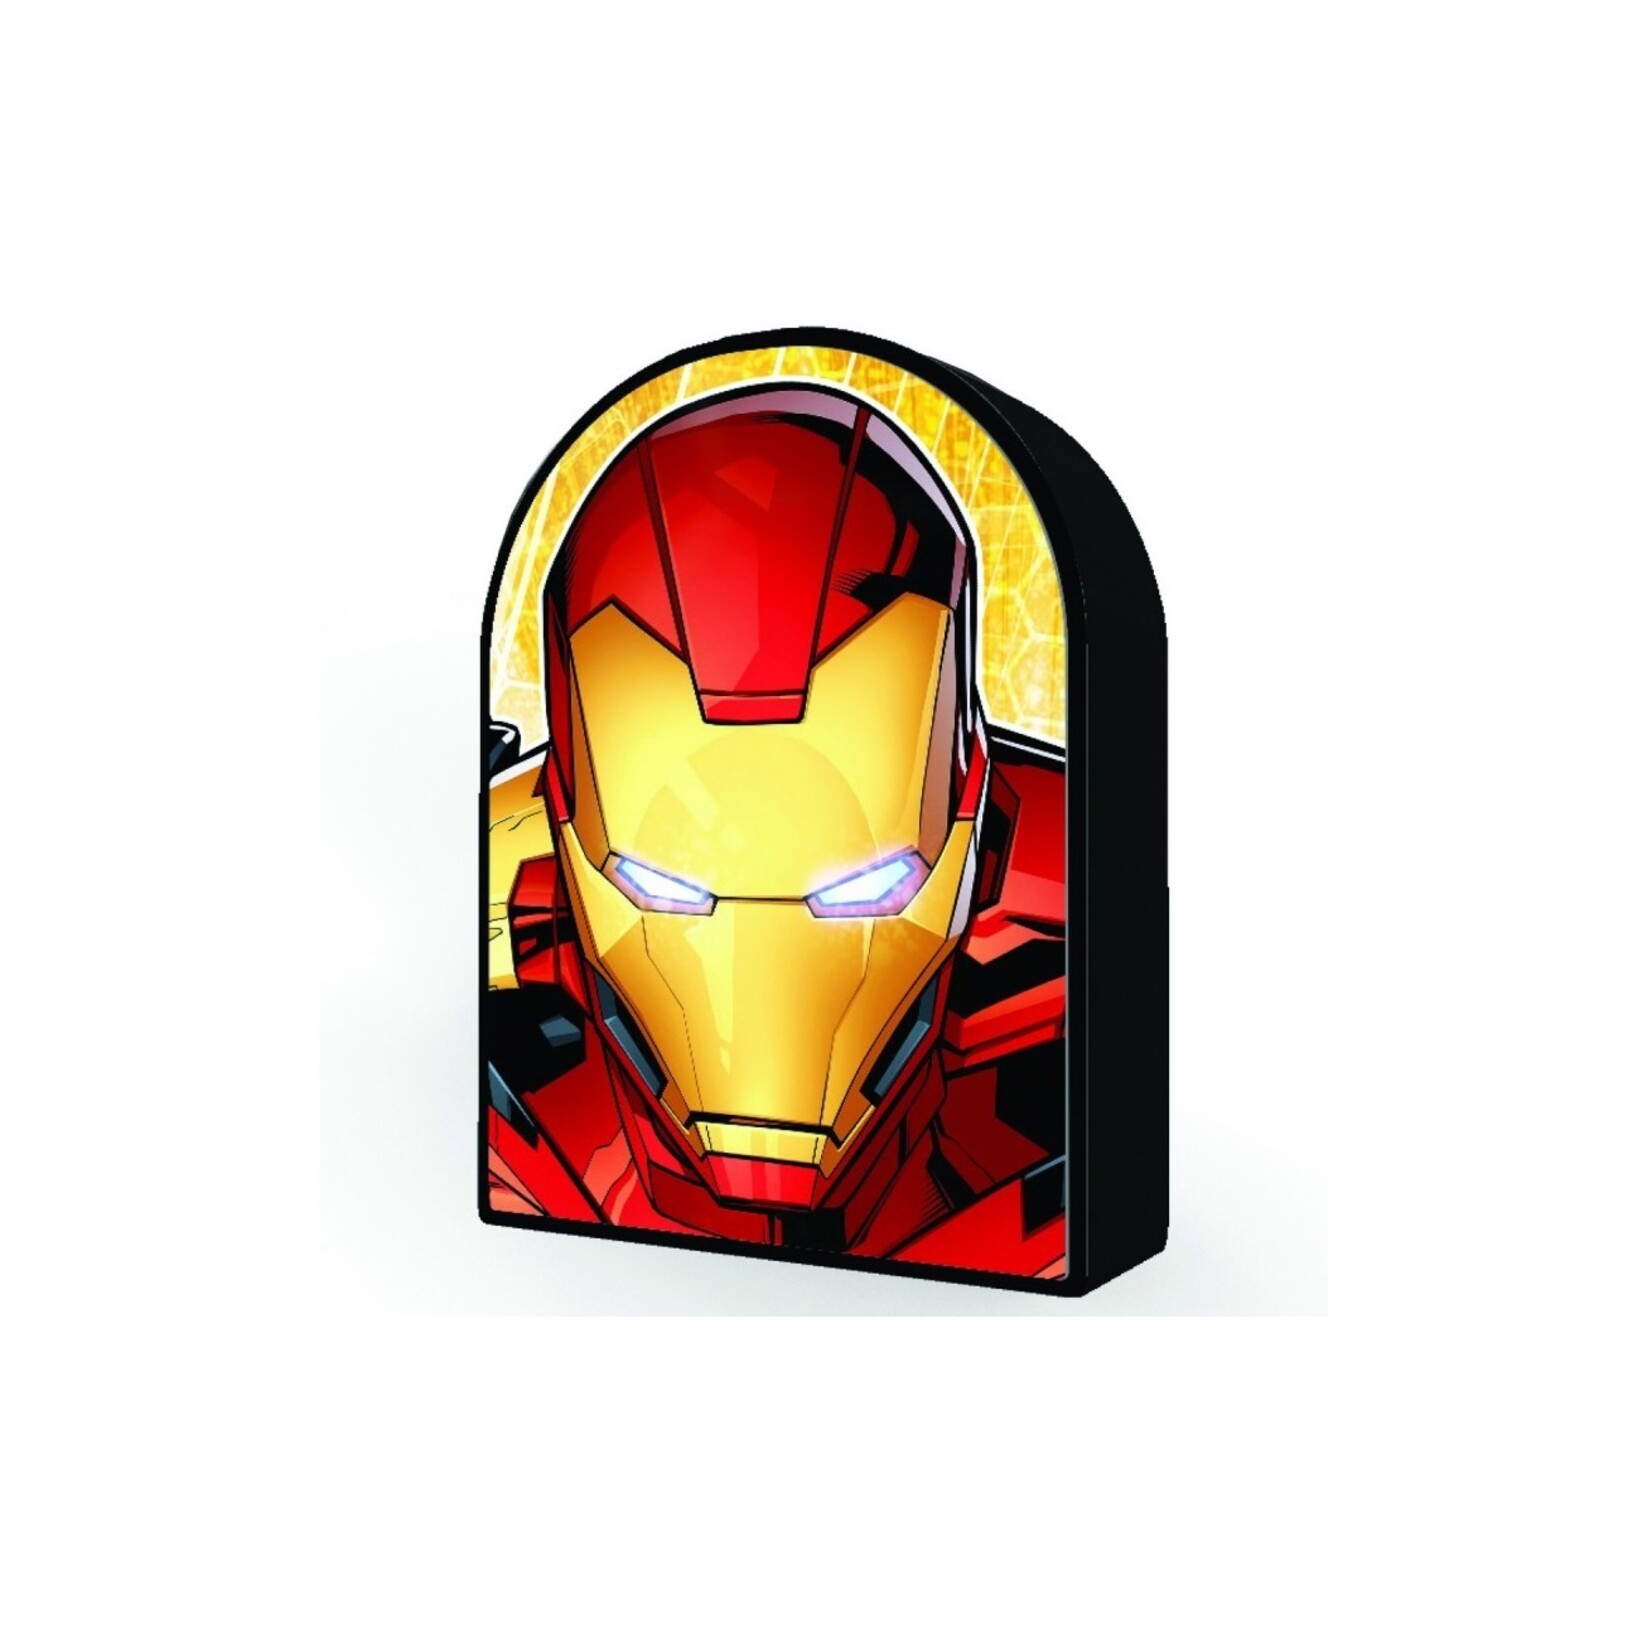 Prime 3D PZ300 - Image 3D - Iron Man